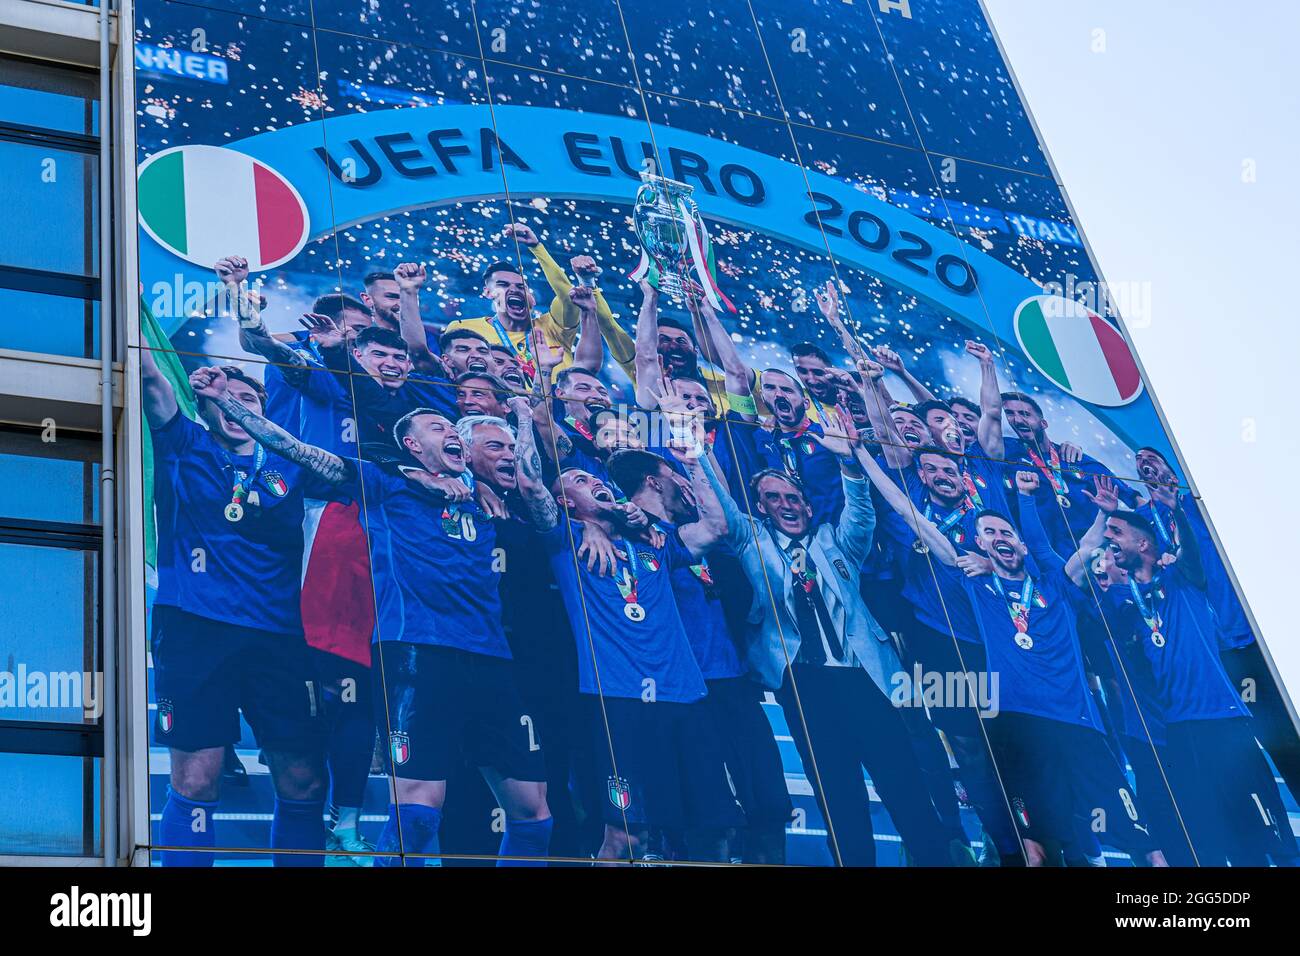 ROME ITALIE, ROYAUME-UNI. 29 août 2021. Le siège de la fédération italienne FIGC est décoré d'une fresque célébrant le triomphe de l'équipe nationale italienne à l'UEFA Euro 2020 avec Roberto Mancini et l'équipe italienne victorieuse photographiée en levant le trophée Henri Delaunay European Championship après avoir battu l'Angleterre dans une fusillade de de pénalité au stade Wembley le 11 Juillet 2021. Credit: amer ghazzal / Alamy Live News Banque D'Images